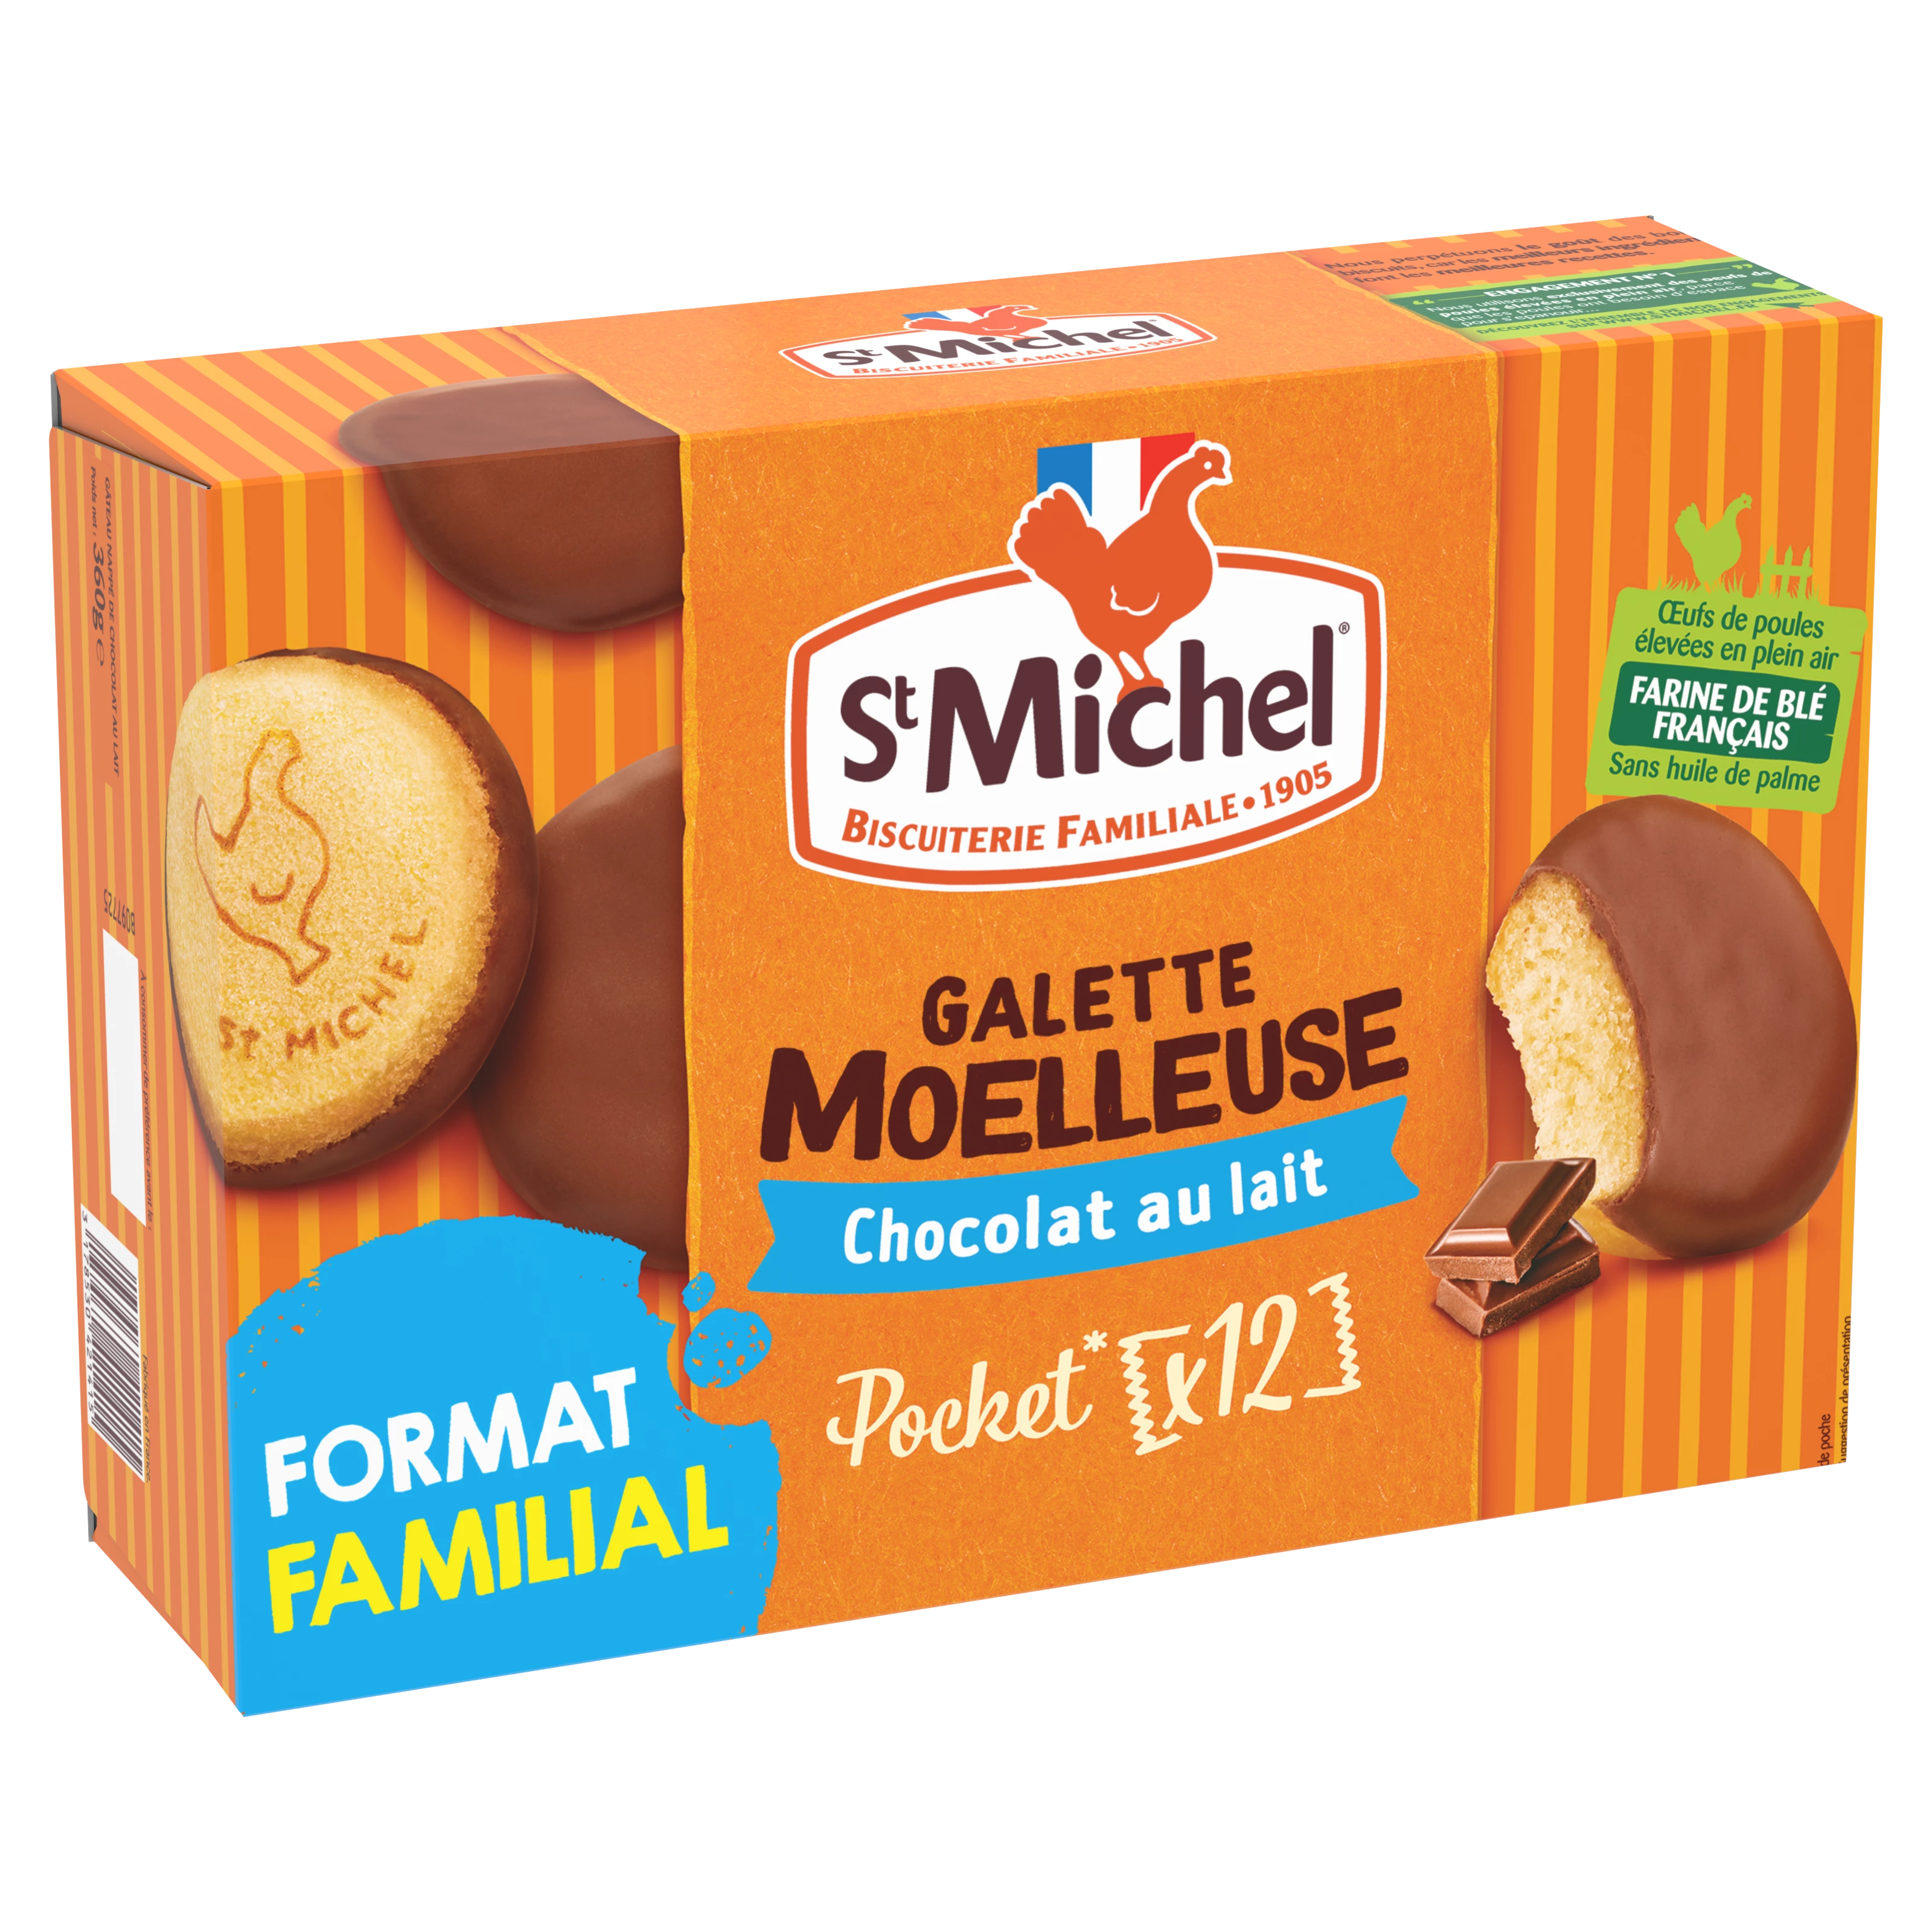 Galettes Moelleuses Chocolat au Lait 360g - ST MICHEL